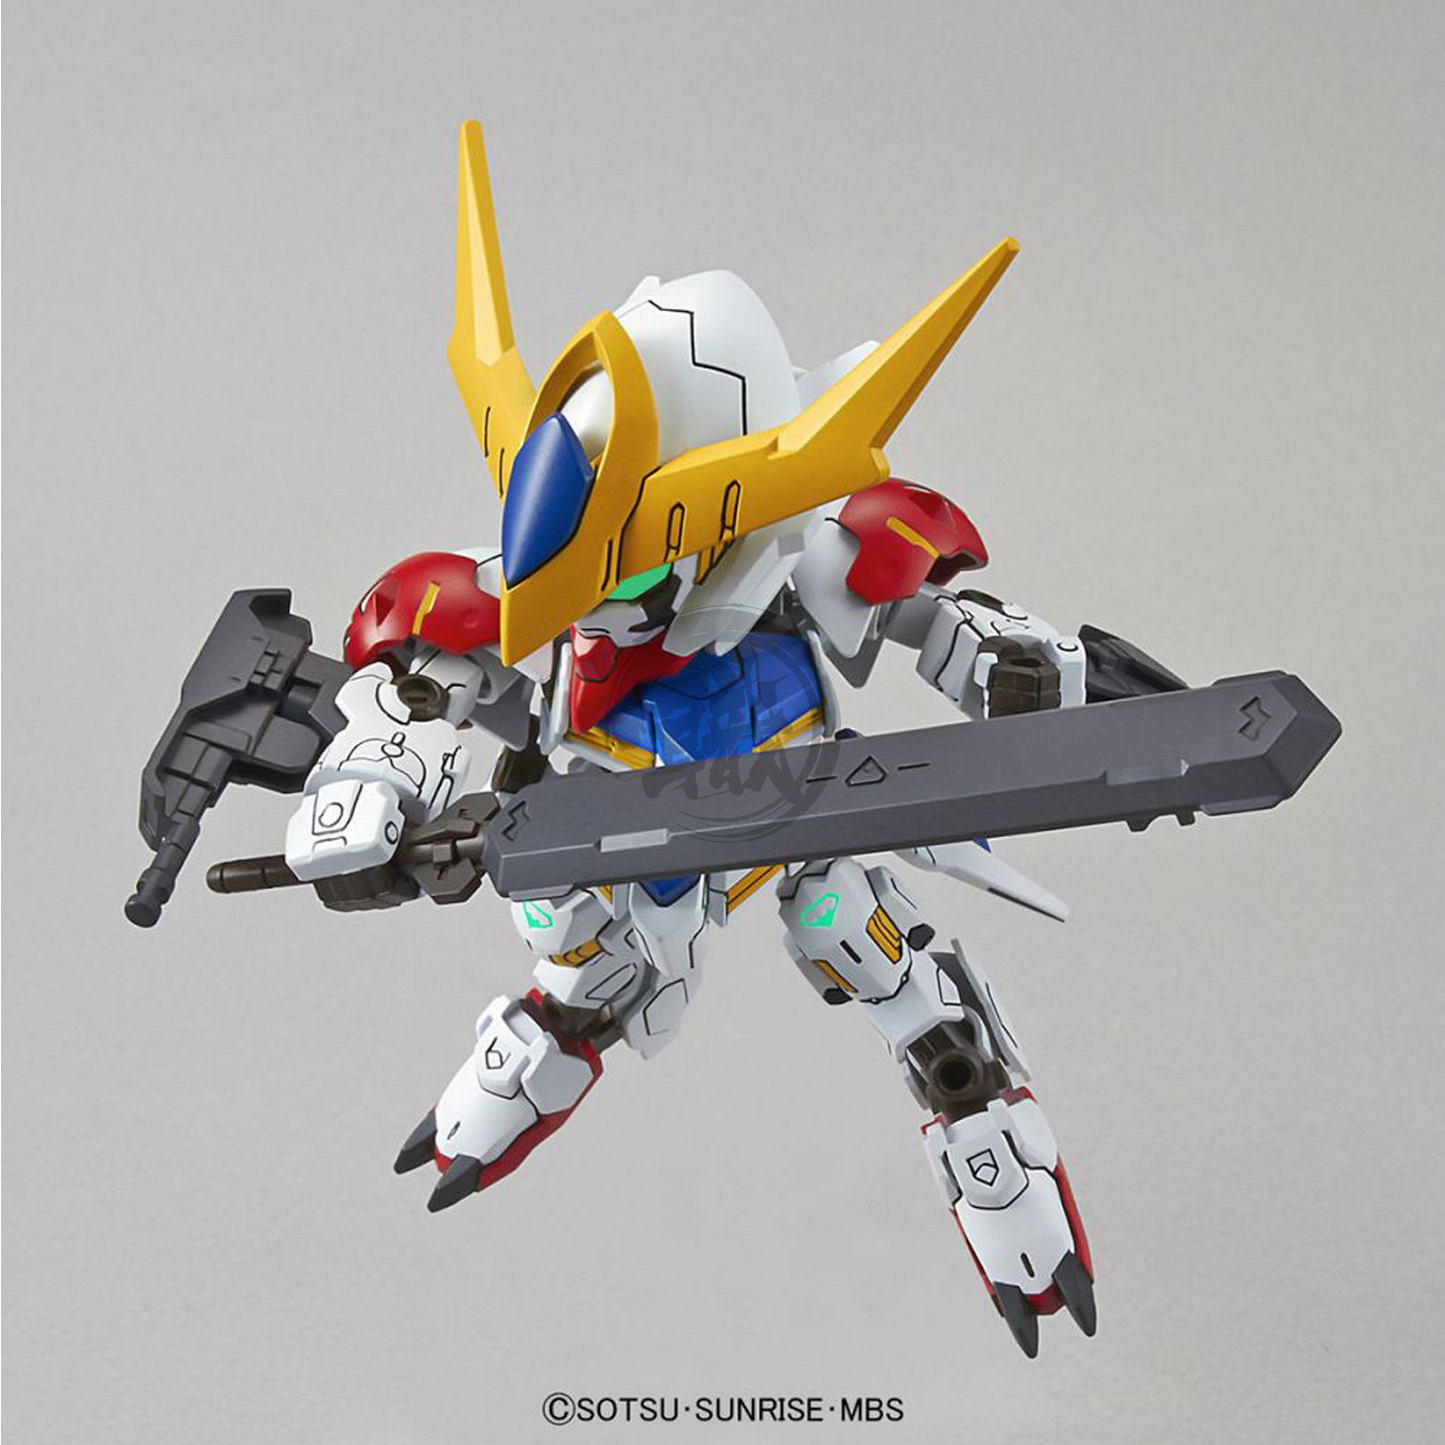 Bandai - SDEX Gundam Barbatos Lupus - ShokuninGunpla